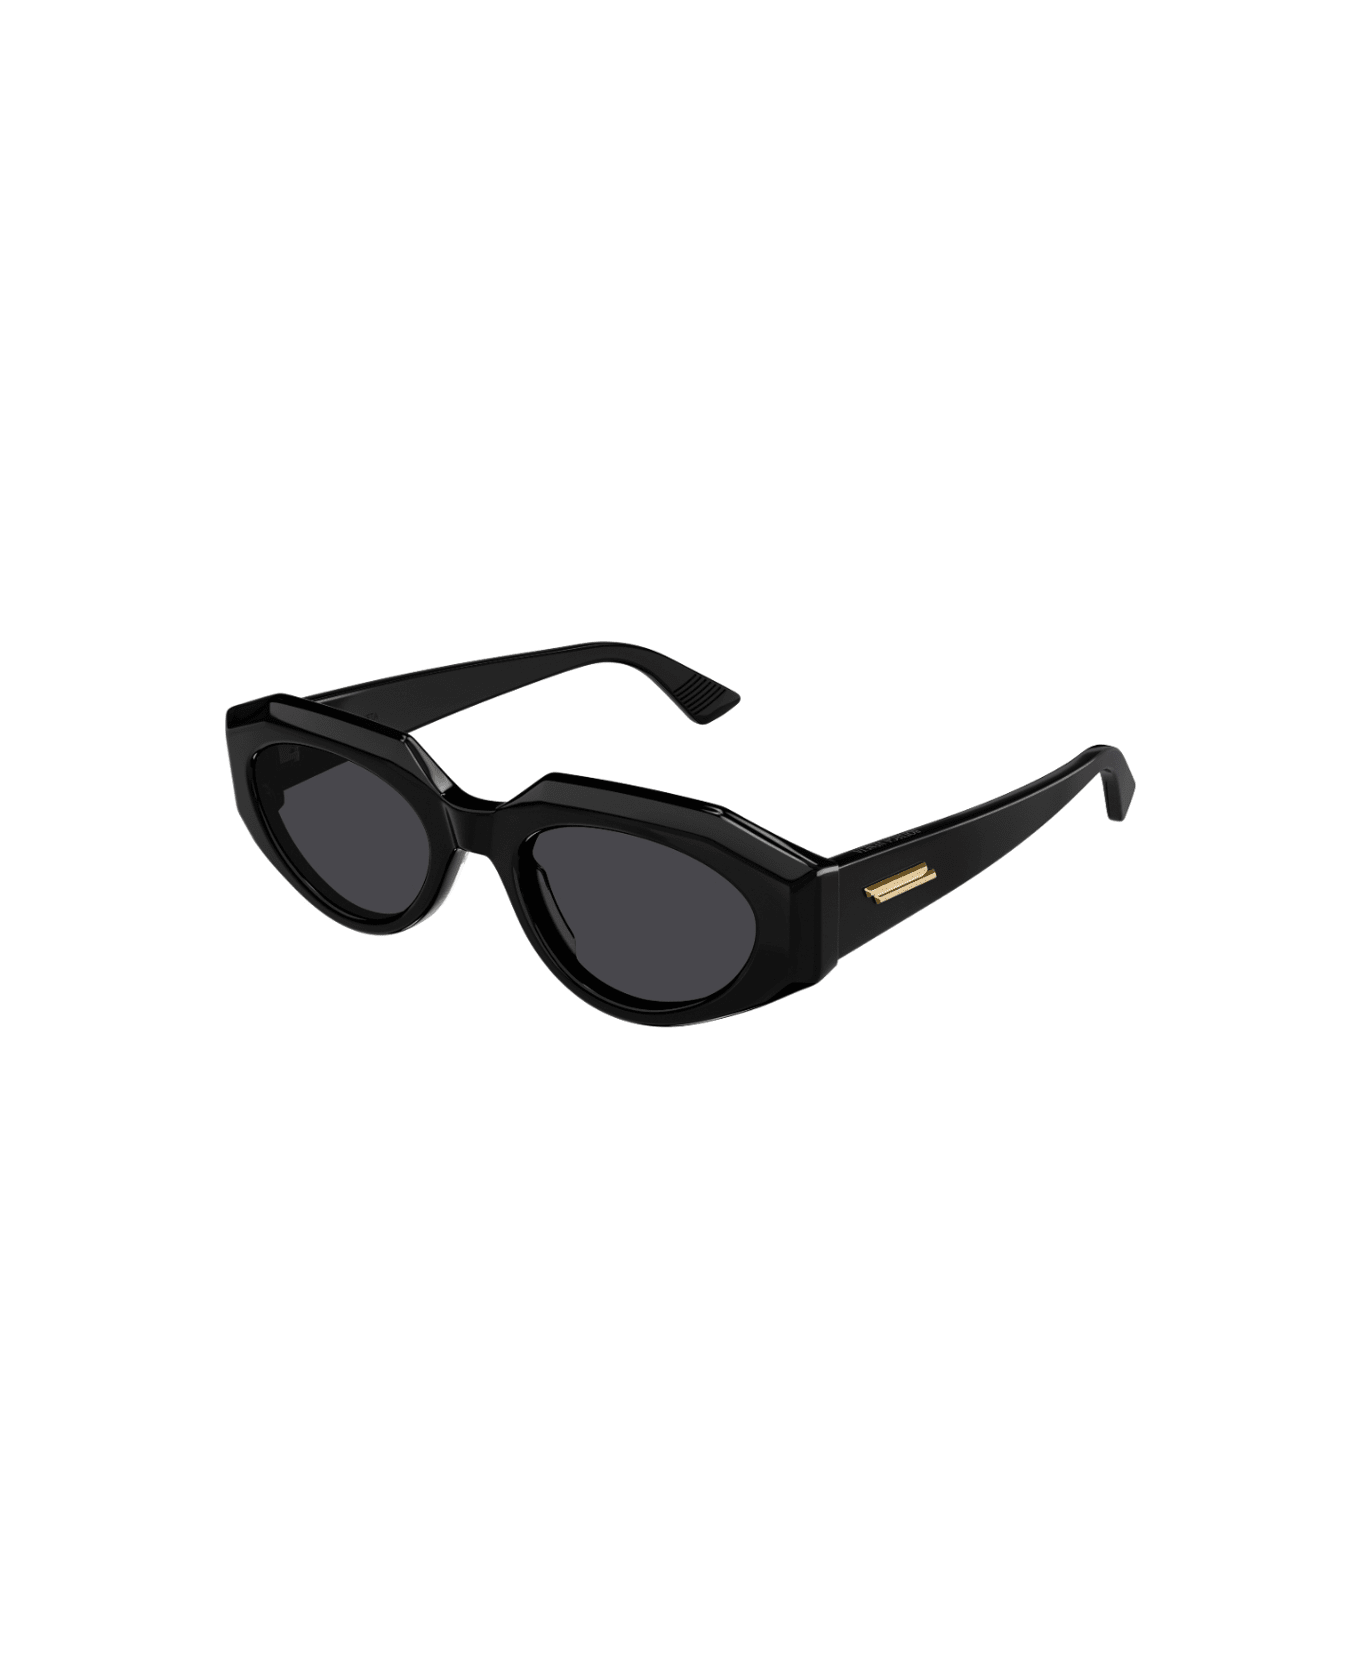 Bottega Veneta Eyewear BV1031s 001 Sunglasses